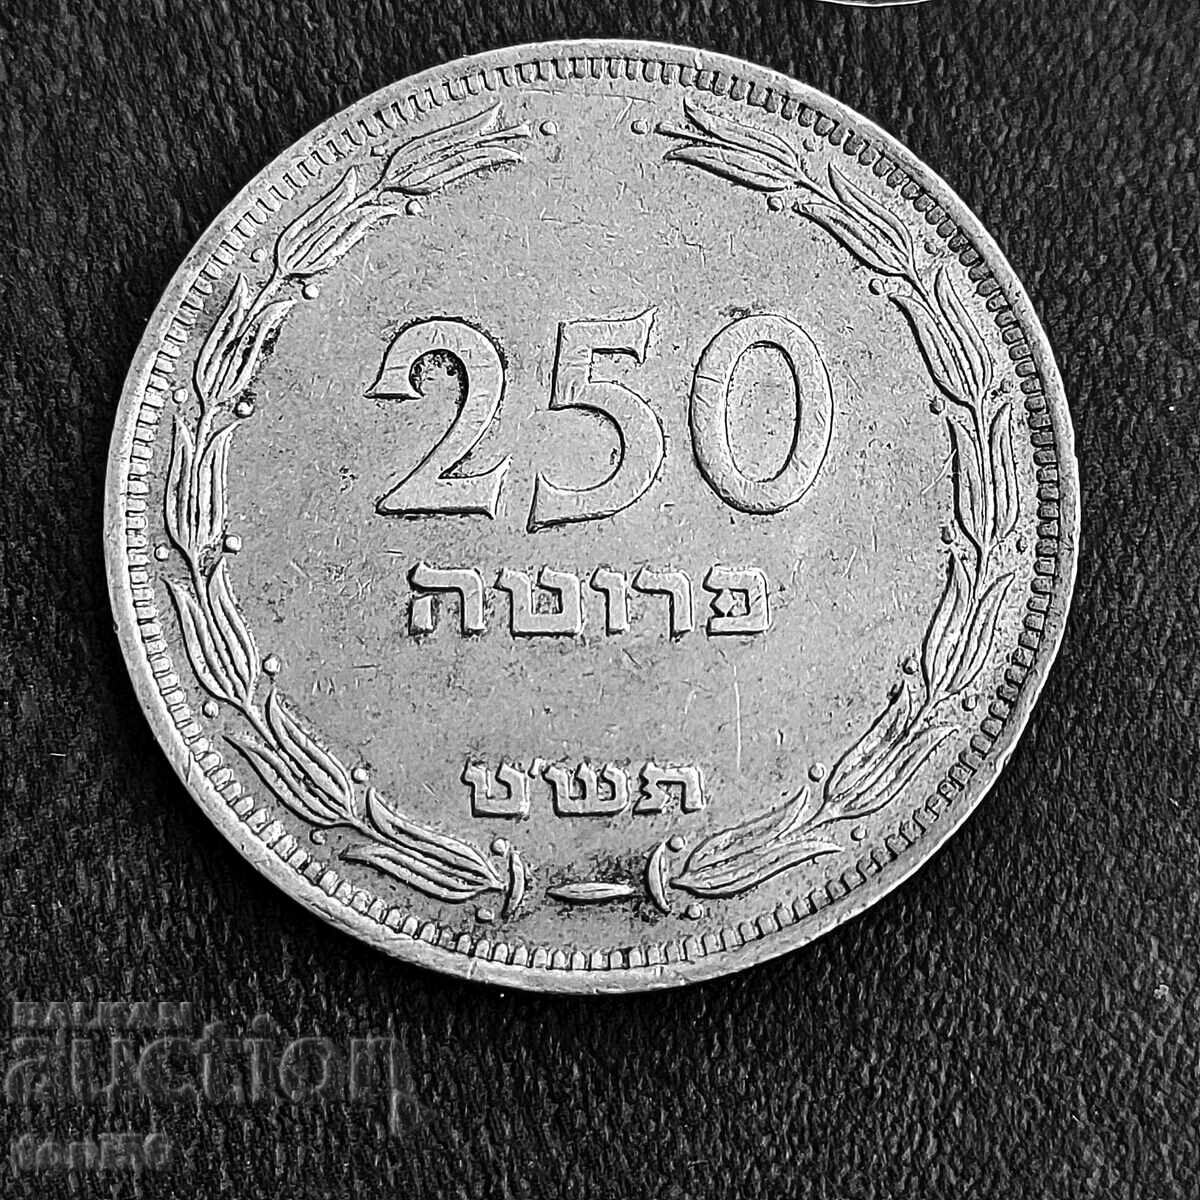 Israel 250 bars 1949 - no "pearl"